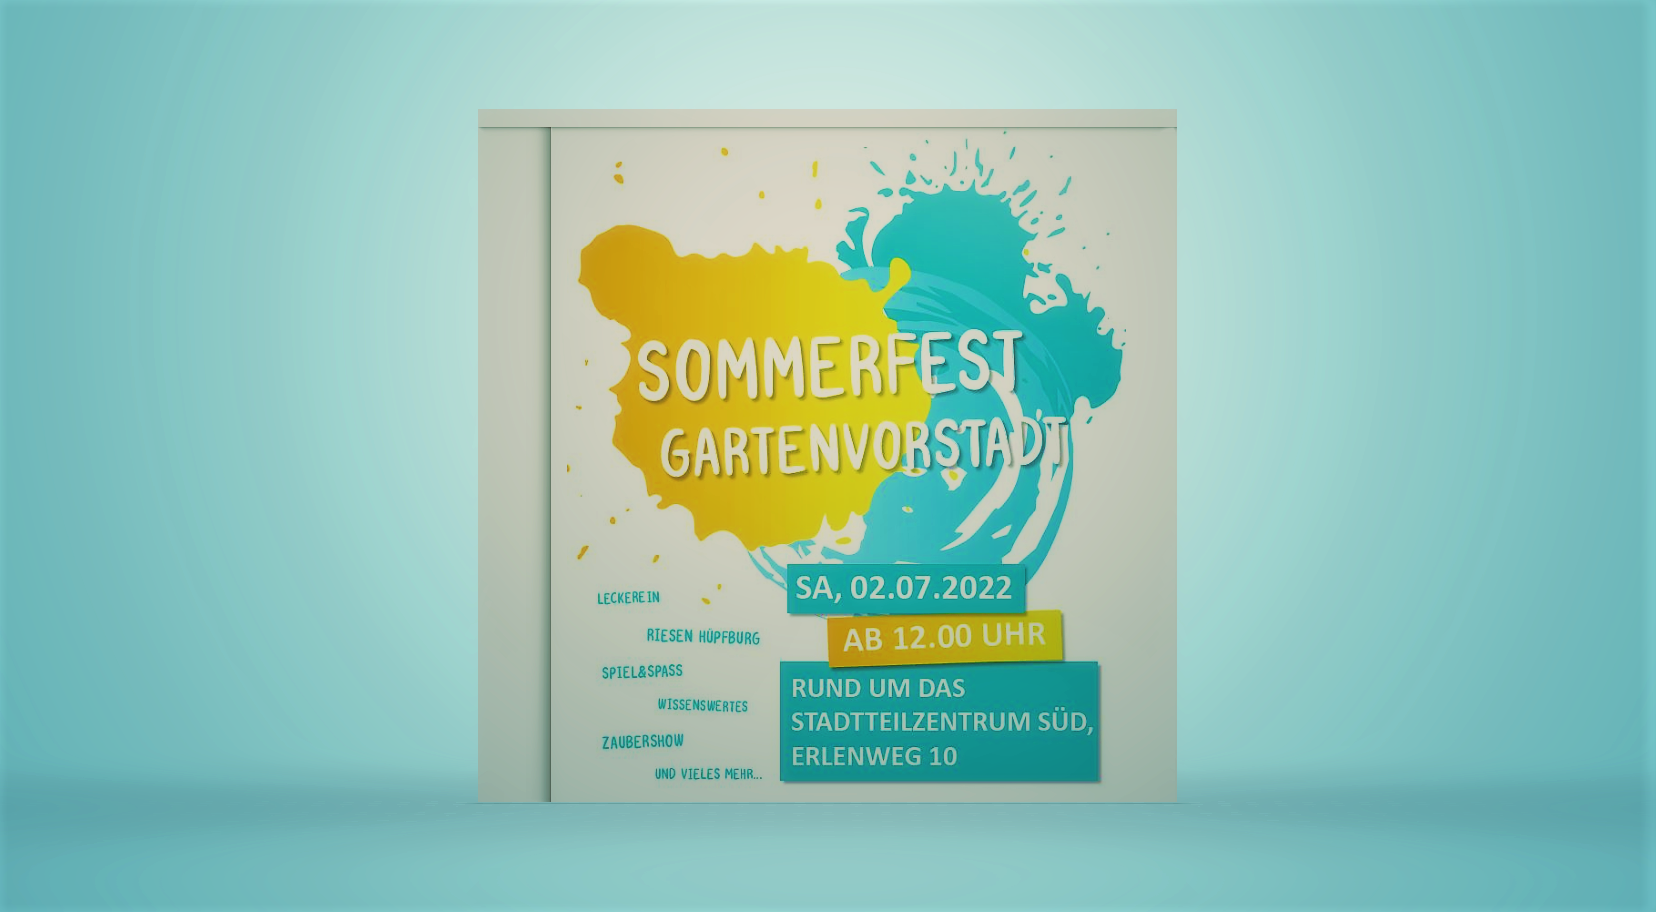 Sommerfest-in-der-Gartenvorstadt-Projekt-Fluchtwege-l-dt-zu-Gespr-chen-mit-Migranten-ein